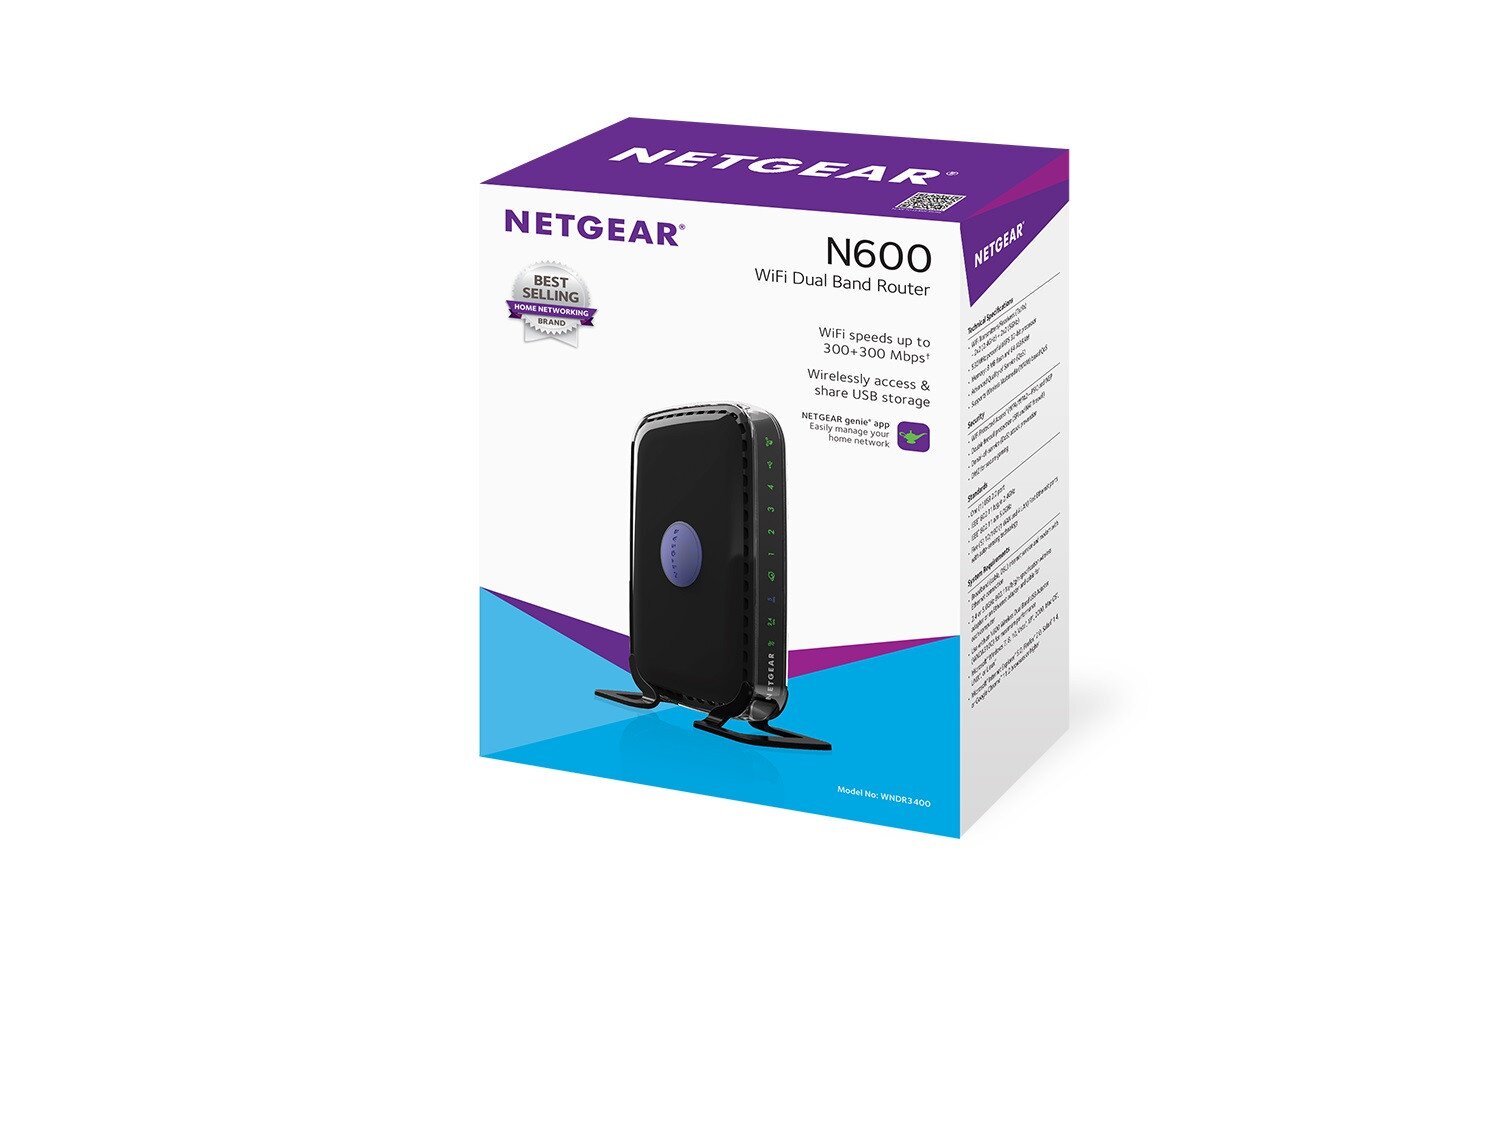 Buy NETGEAR N600 online Worldwide - Tejar.com